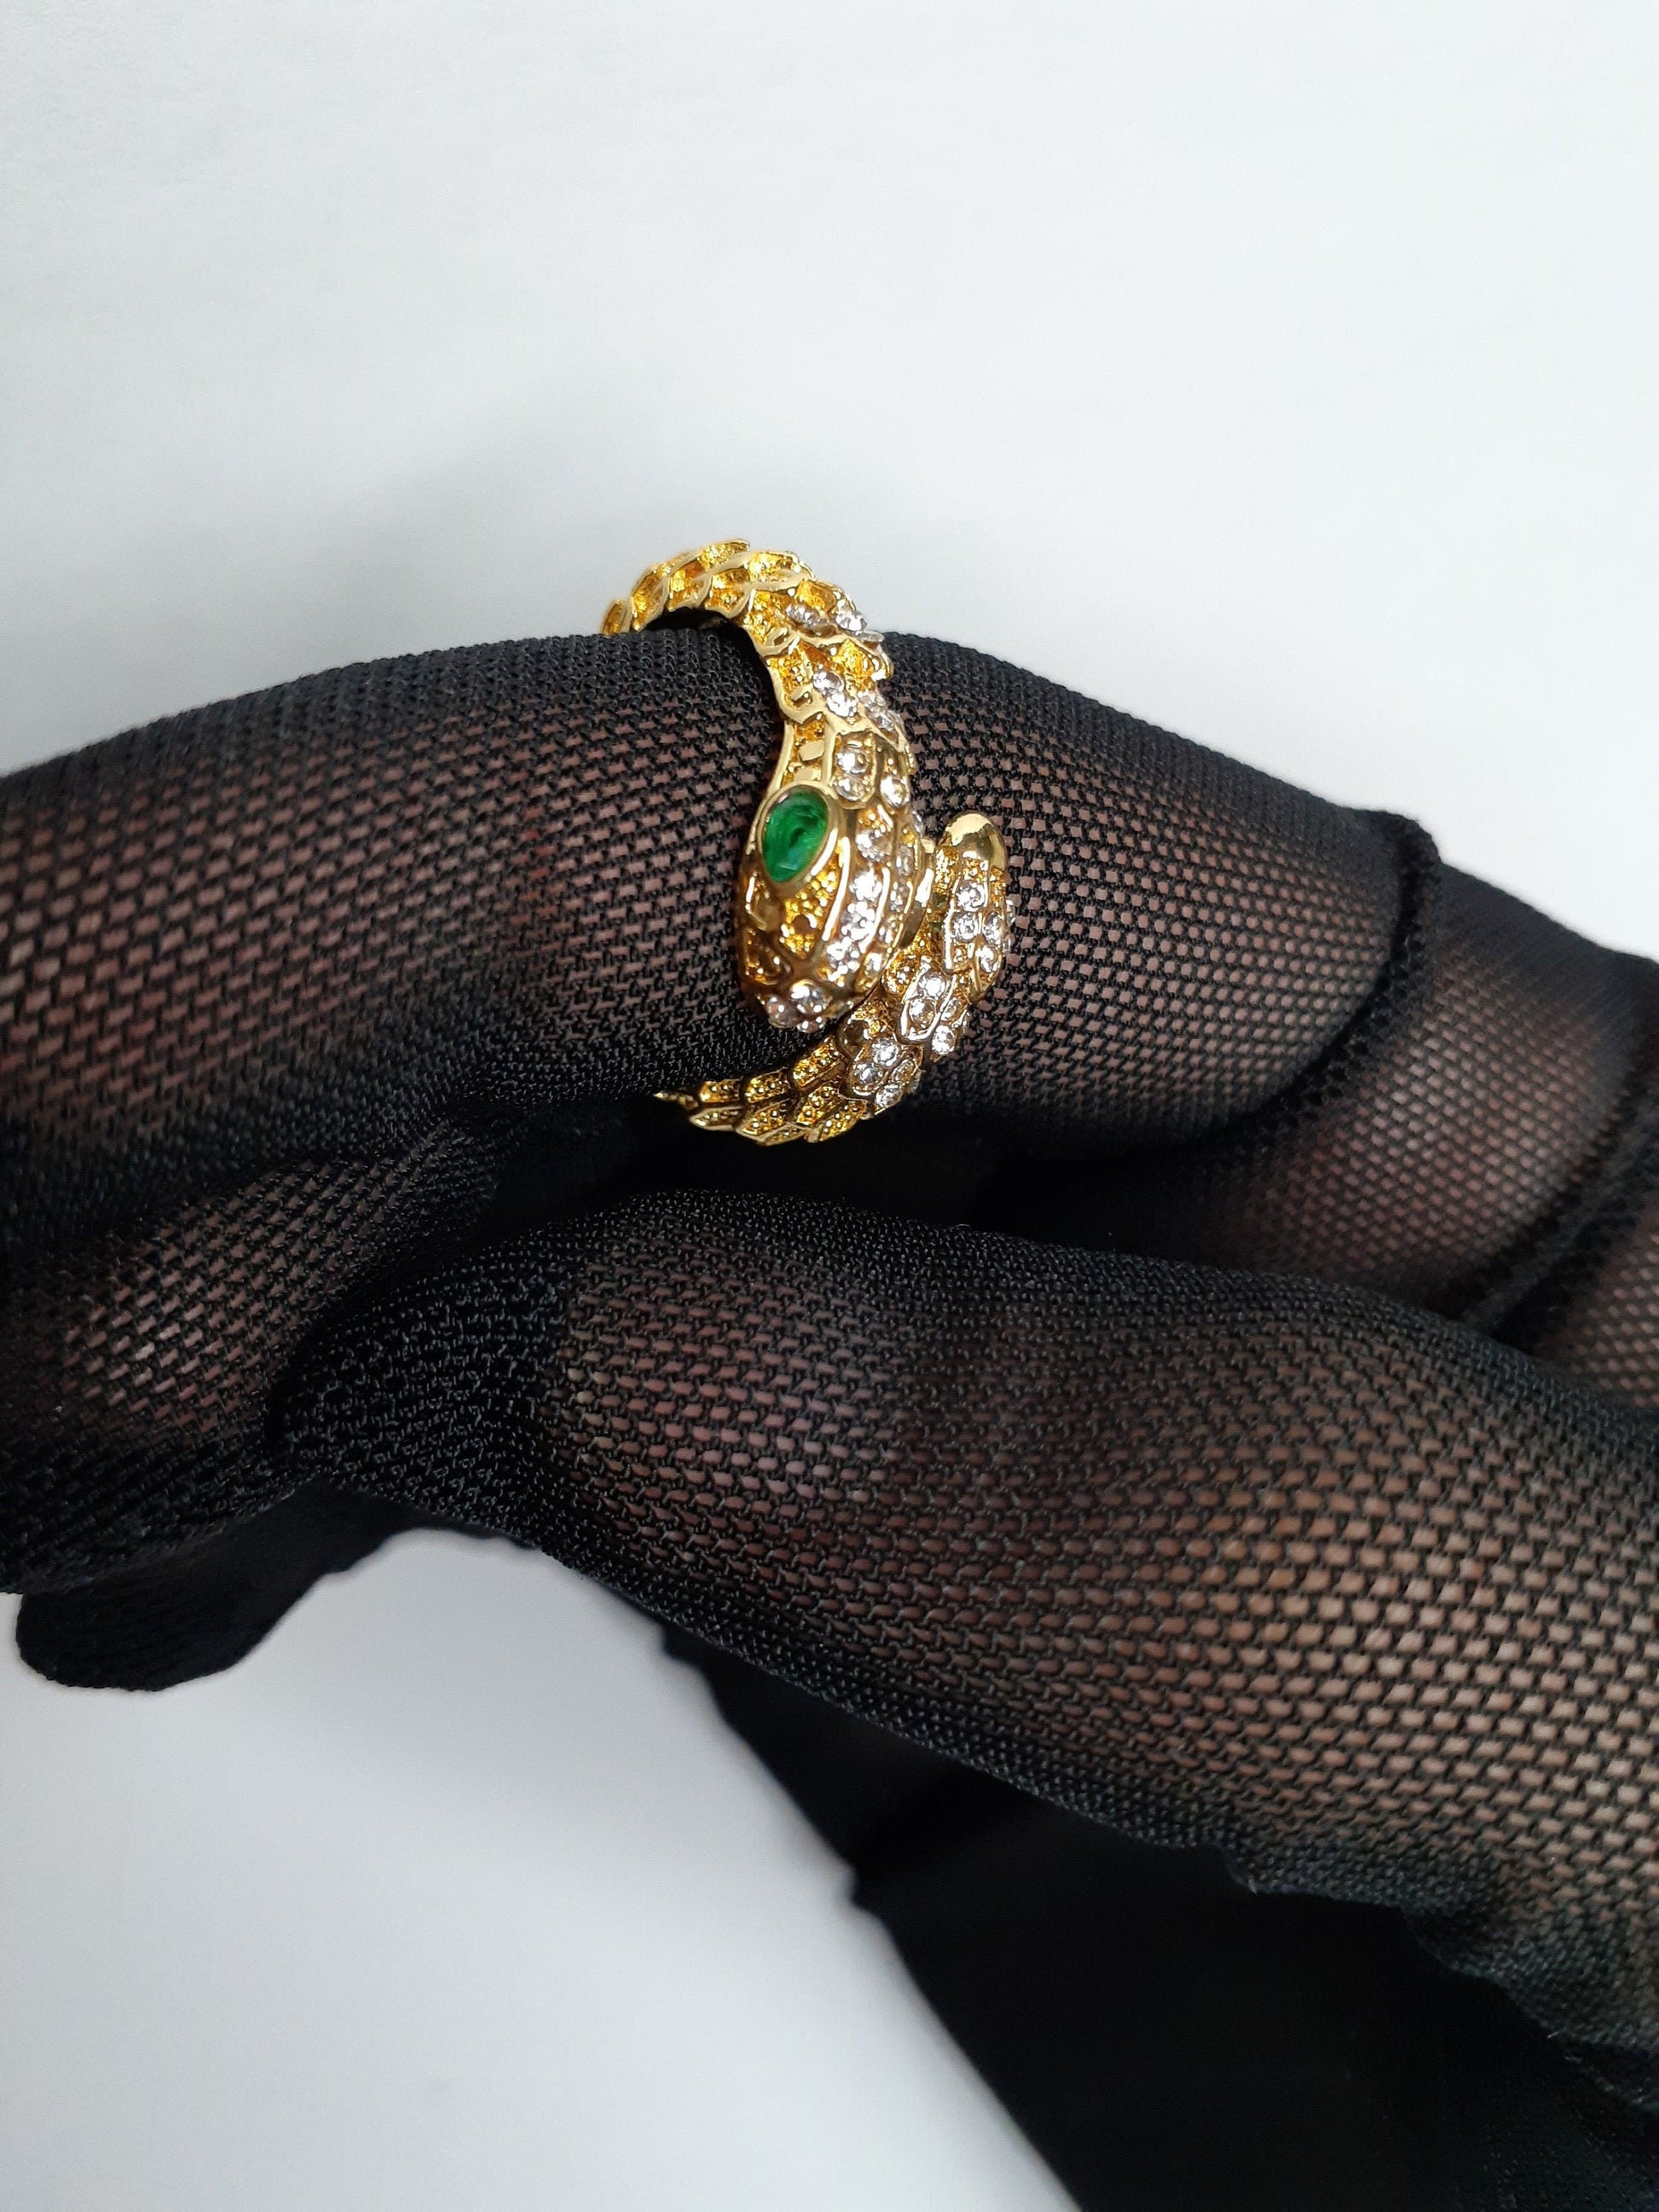 Glamorous snake ring.